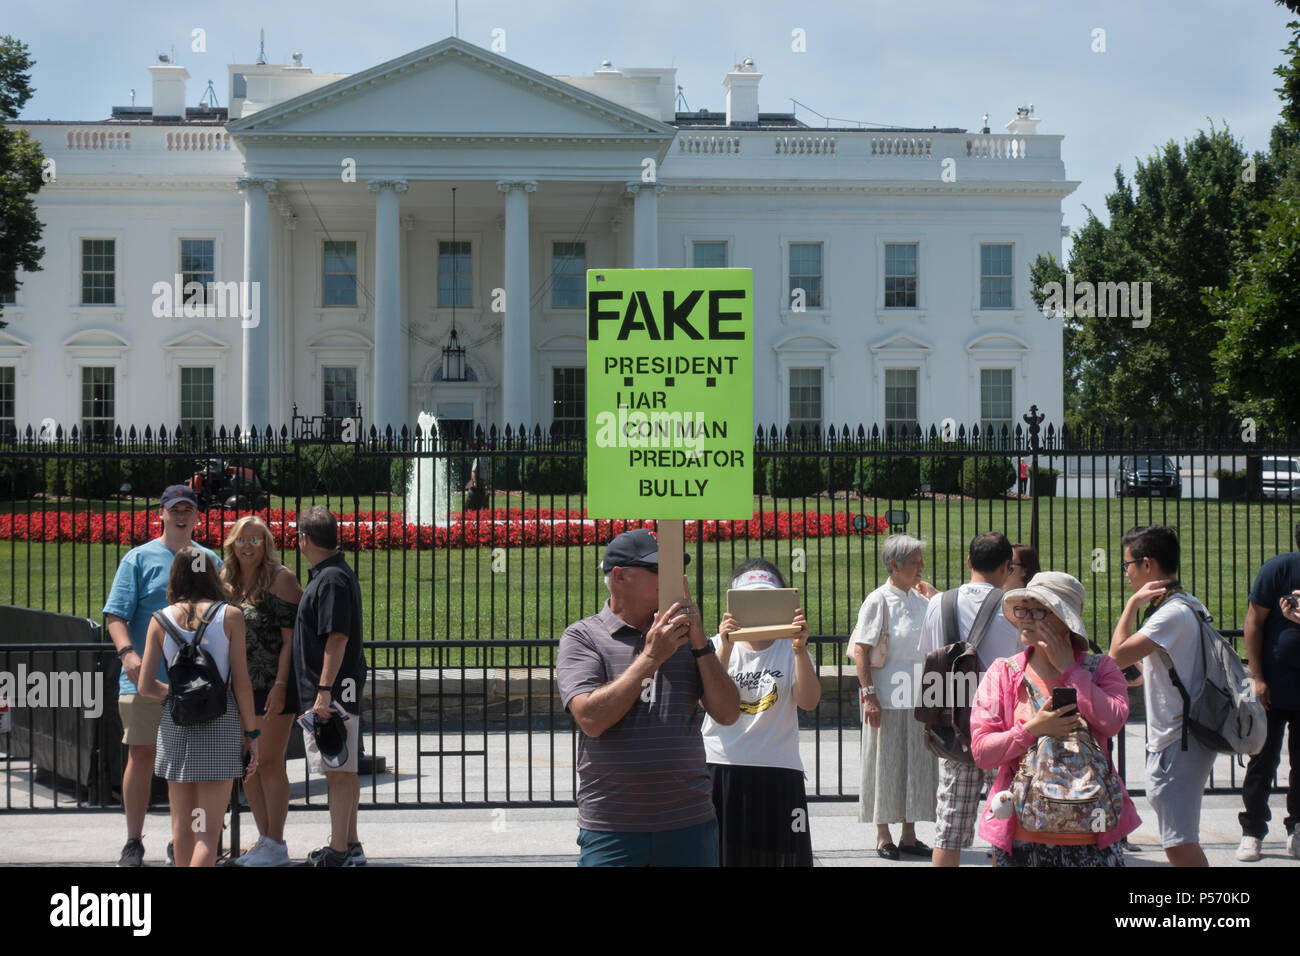 Anti-Trump au piquetage Maison Blanche ; placard indiquant les caractéristiques de Trump Président : menteur, escroc, predator, bully. 25 juin, 2017. Les touristes à proximité Banque D'Images